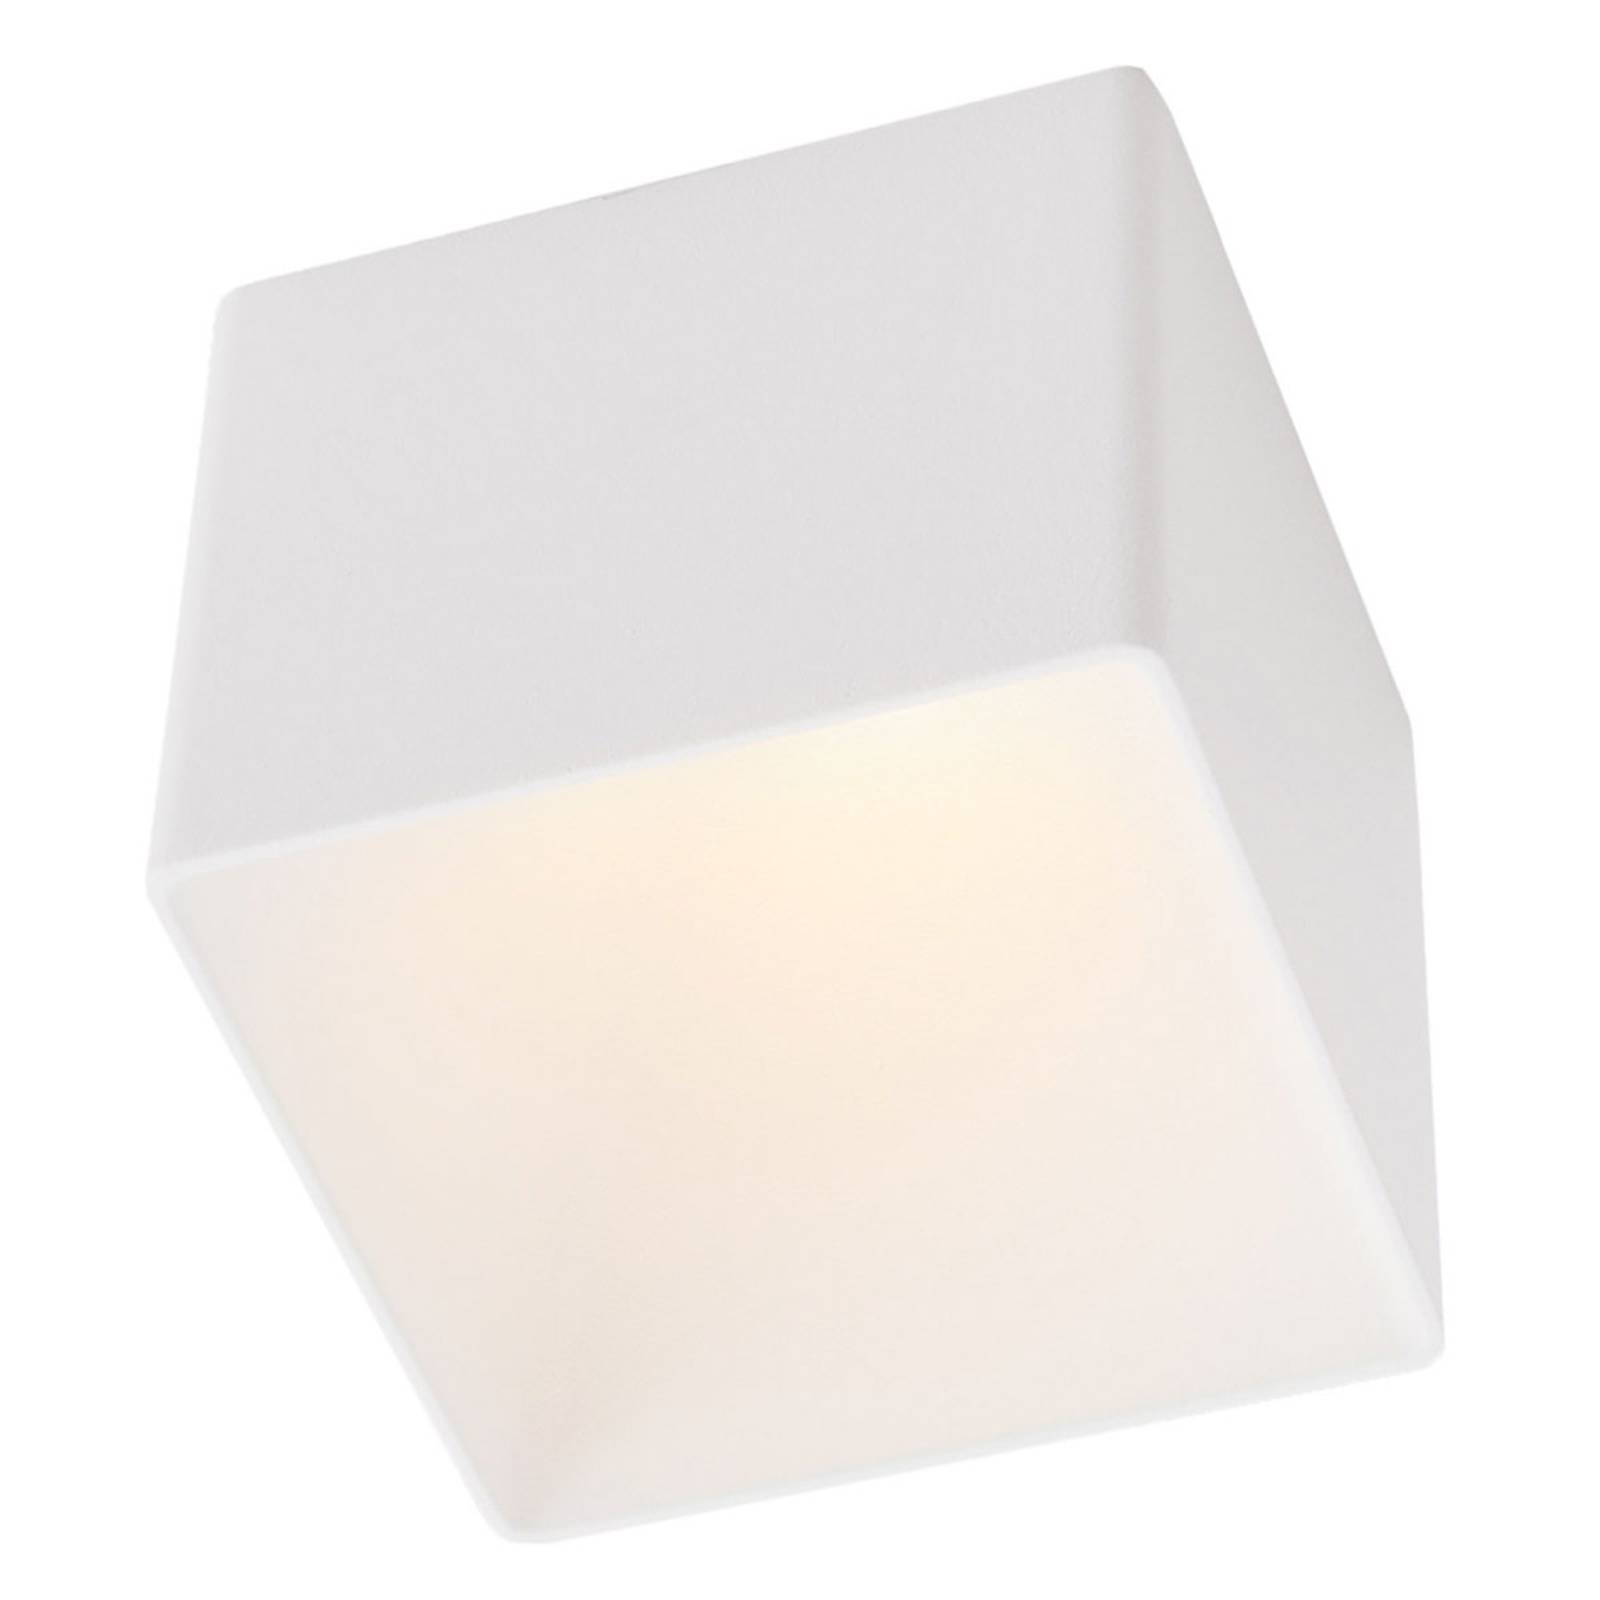 The Light Group GF design Blocky Einbaulampe IP54 weiß 2.700 K